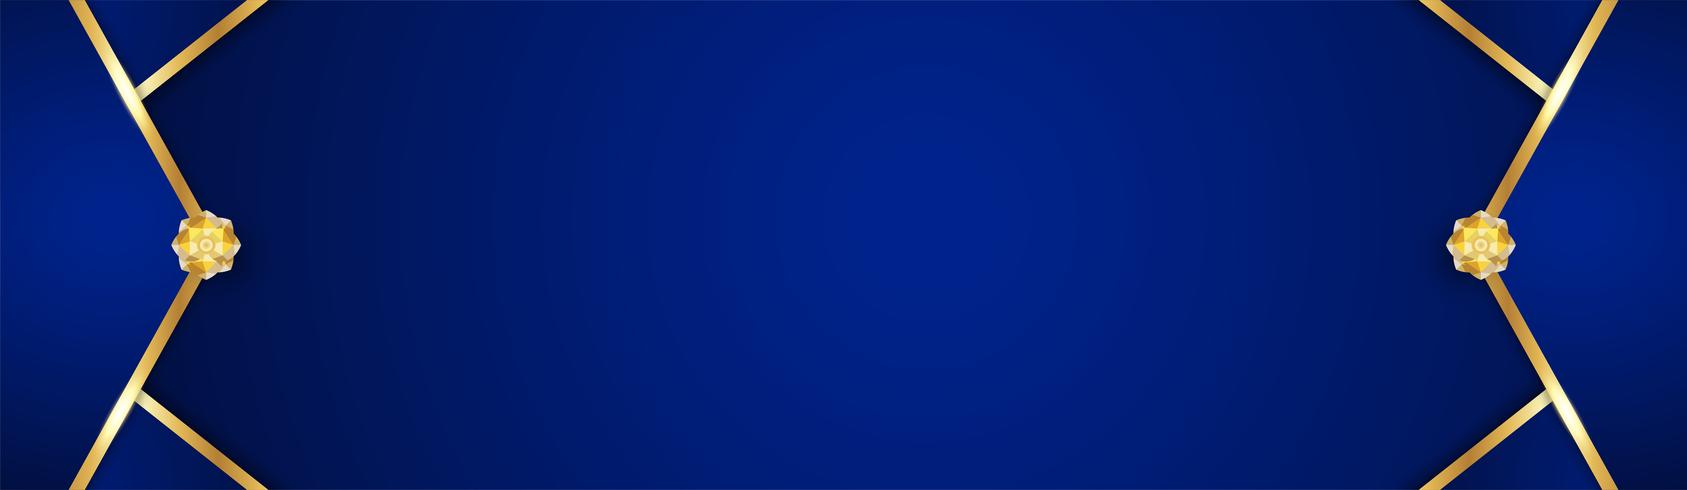 Abstracte blauwe achtergrond in premium Indiase stijl. Sjabloonontwerp voor dekking, zakelijke presentatie, webbanner, bruiloft uitnodiging en luxe verpakking. Vectorillustratie met gouden rand. vector